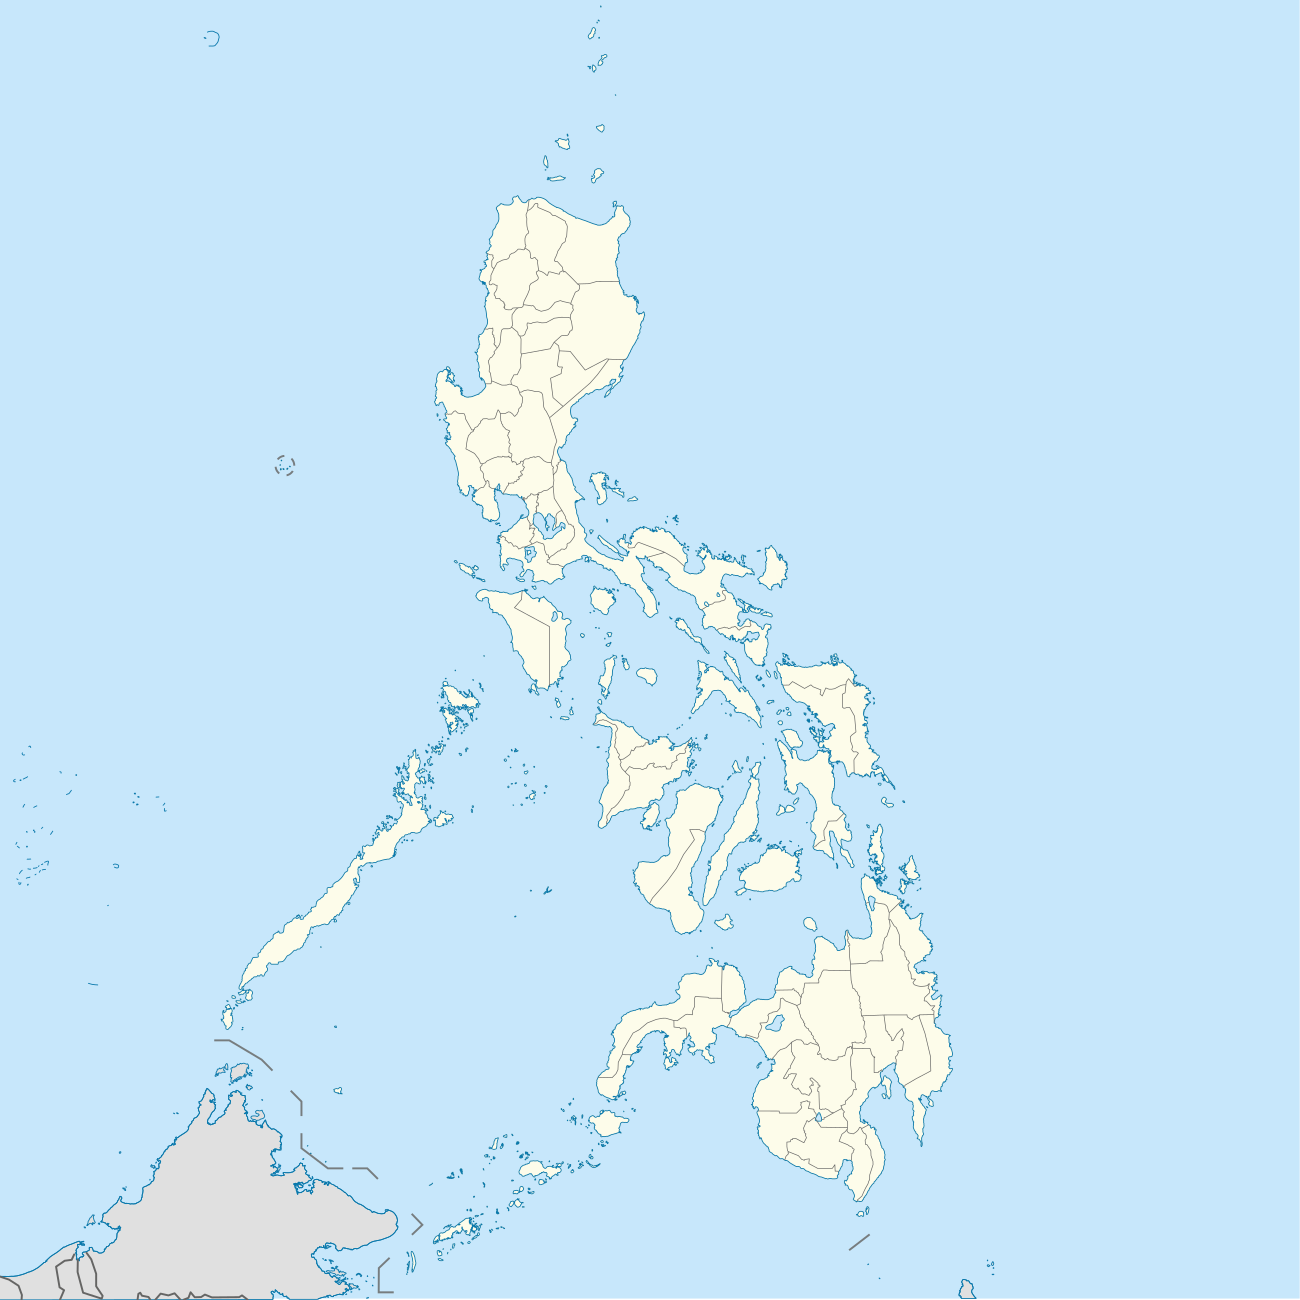 Seznam prezidentů Filipín podle provincií se nachází na Filipínách